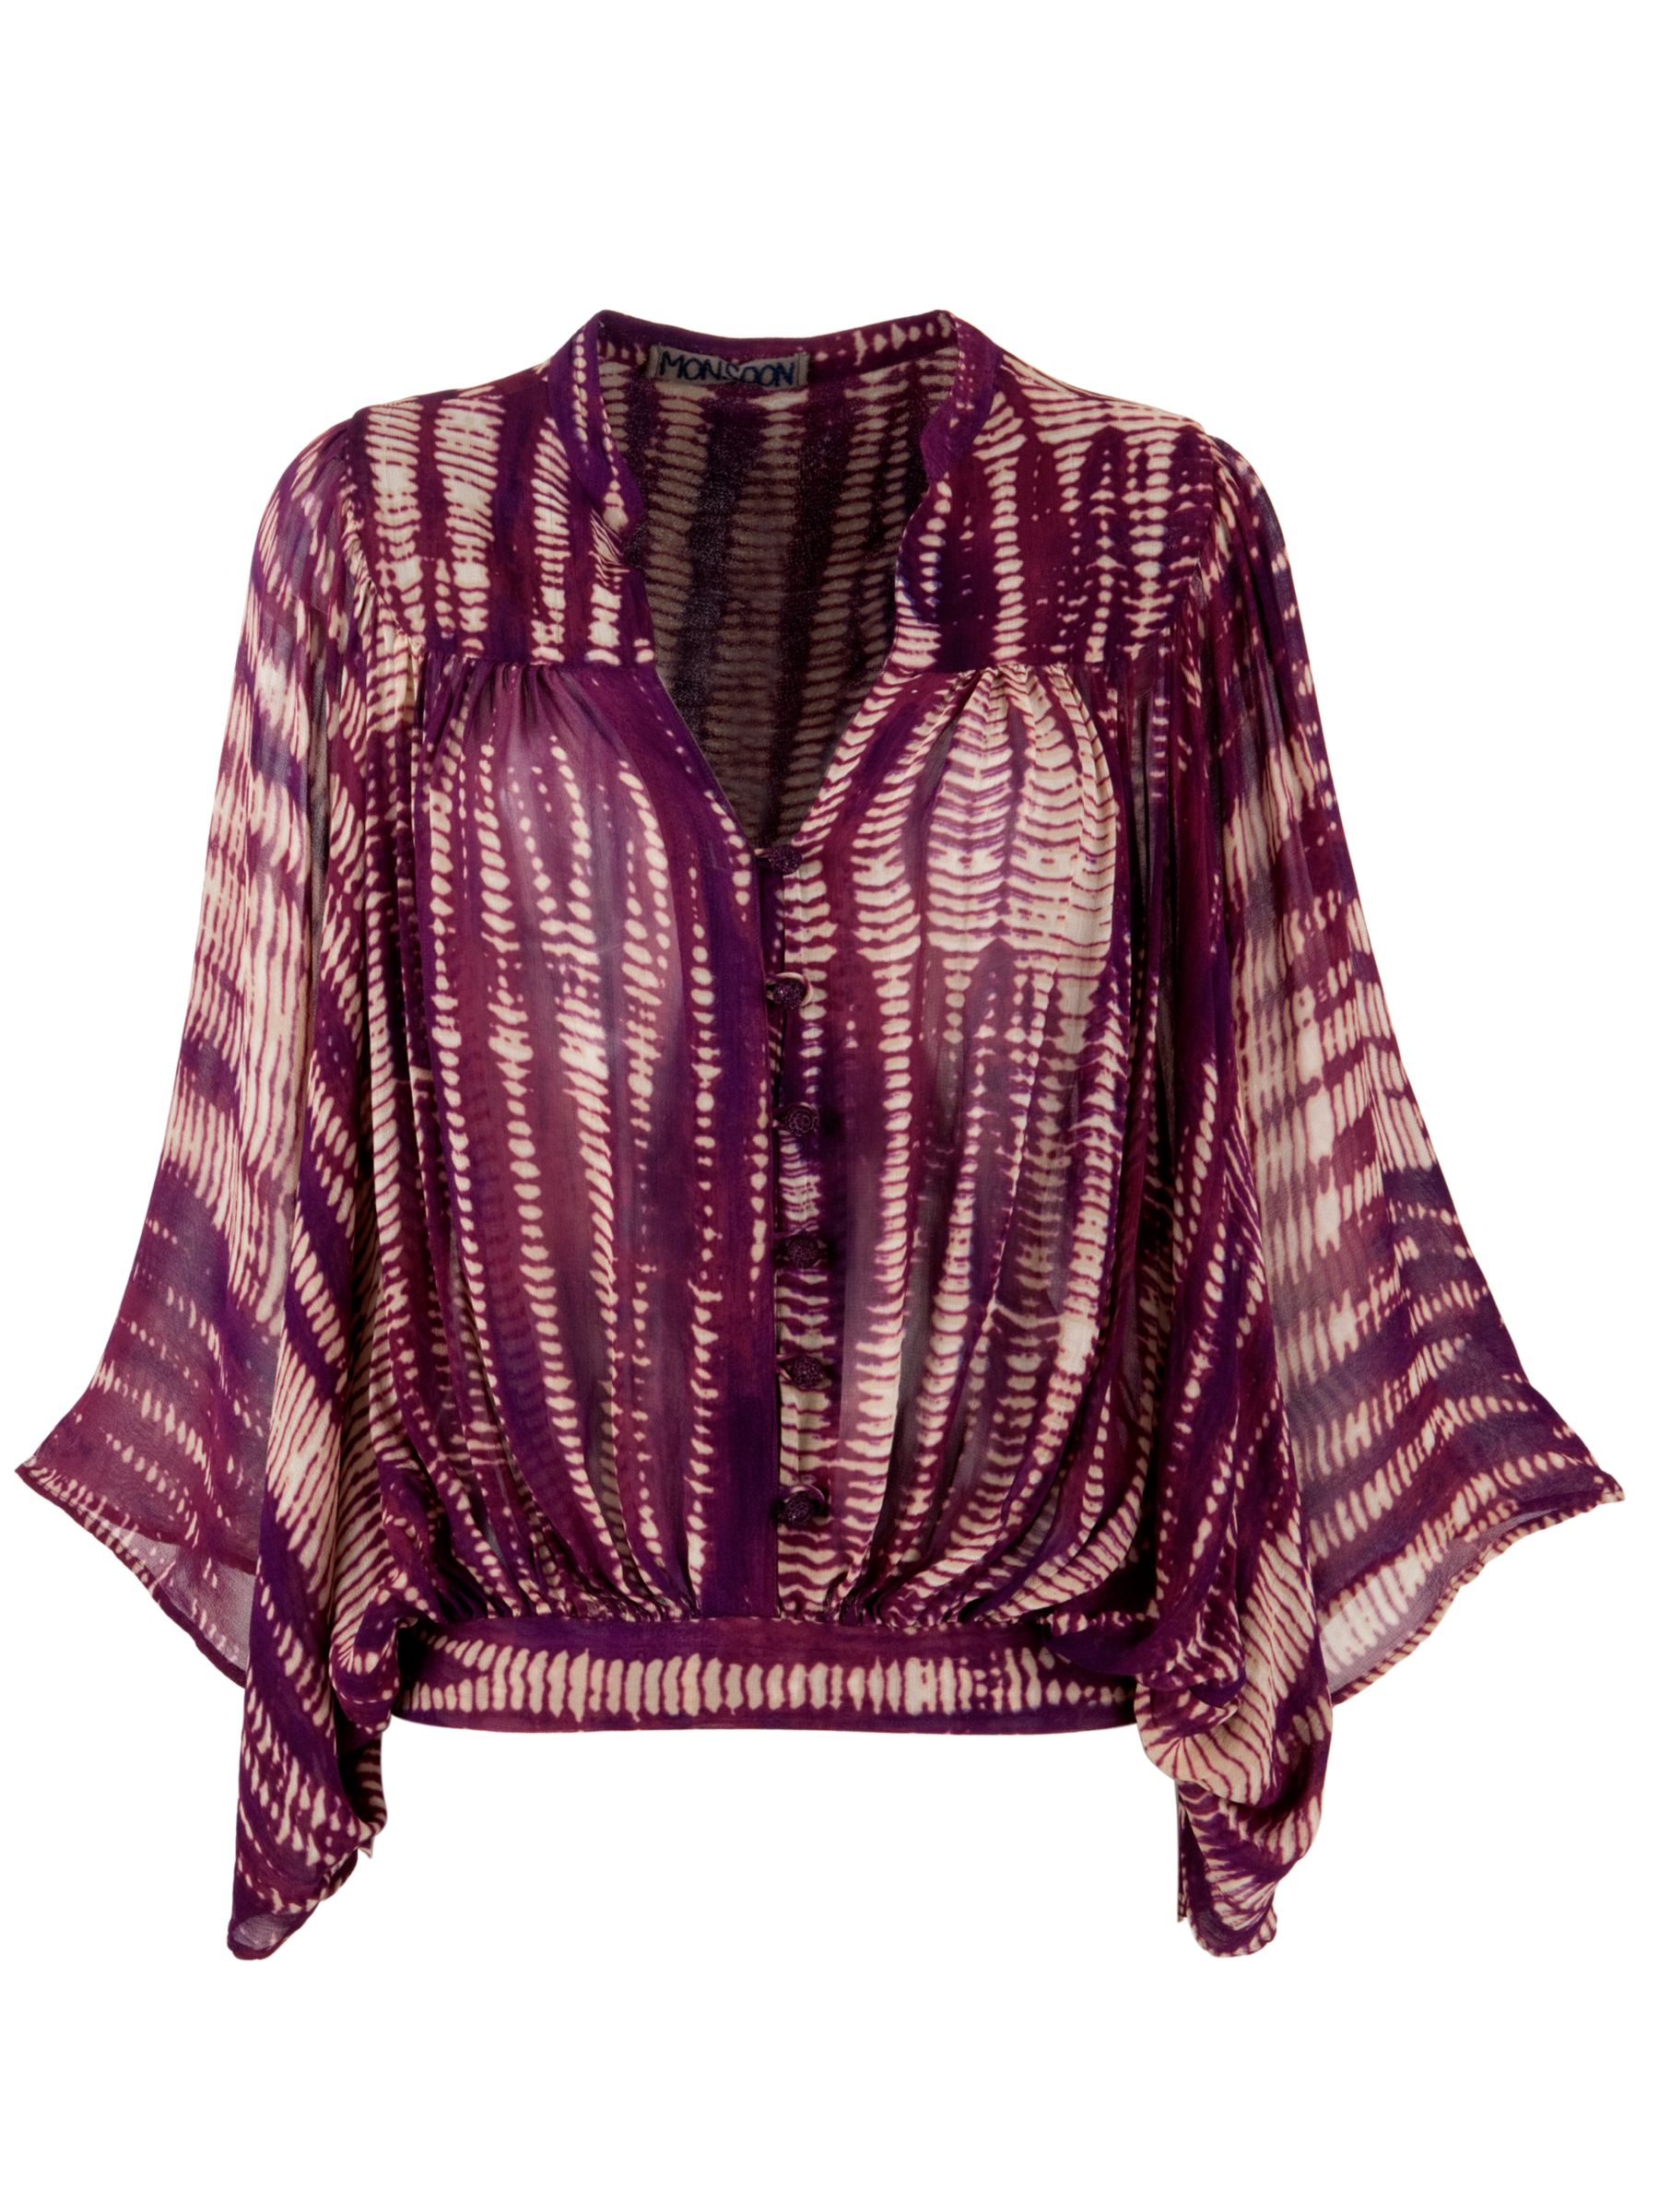 Monsoon L.O.V.E. Tie-Dye Print Blouse, Purple